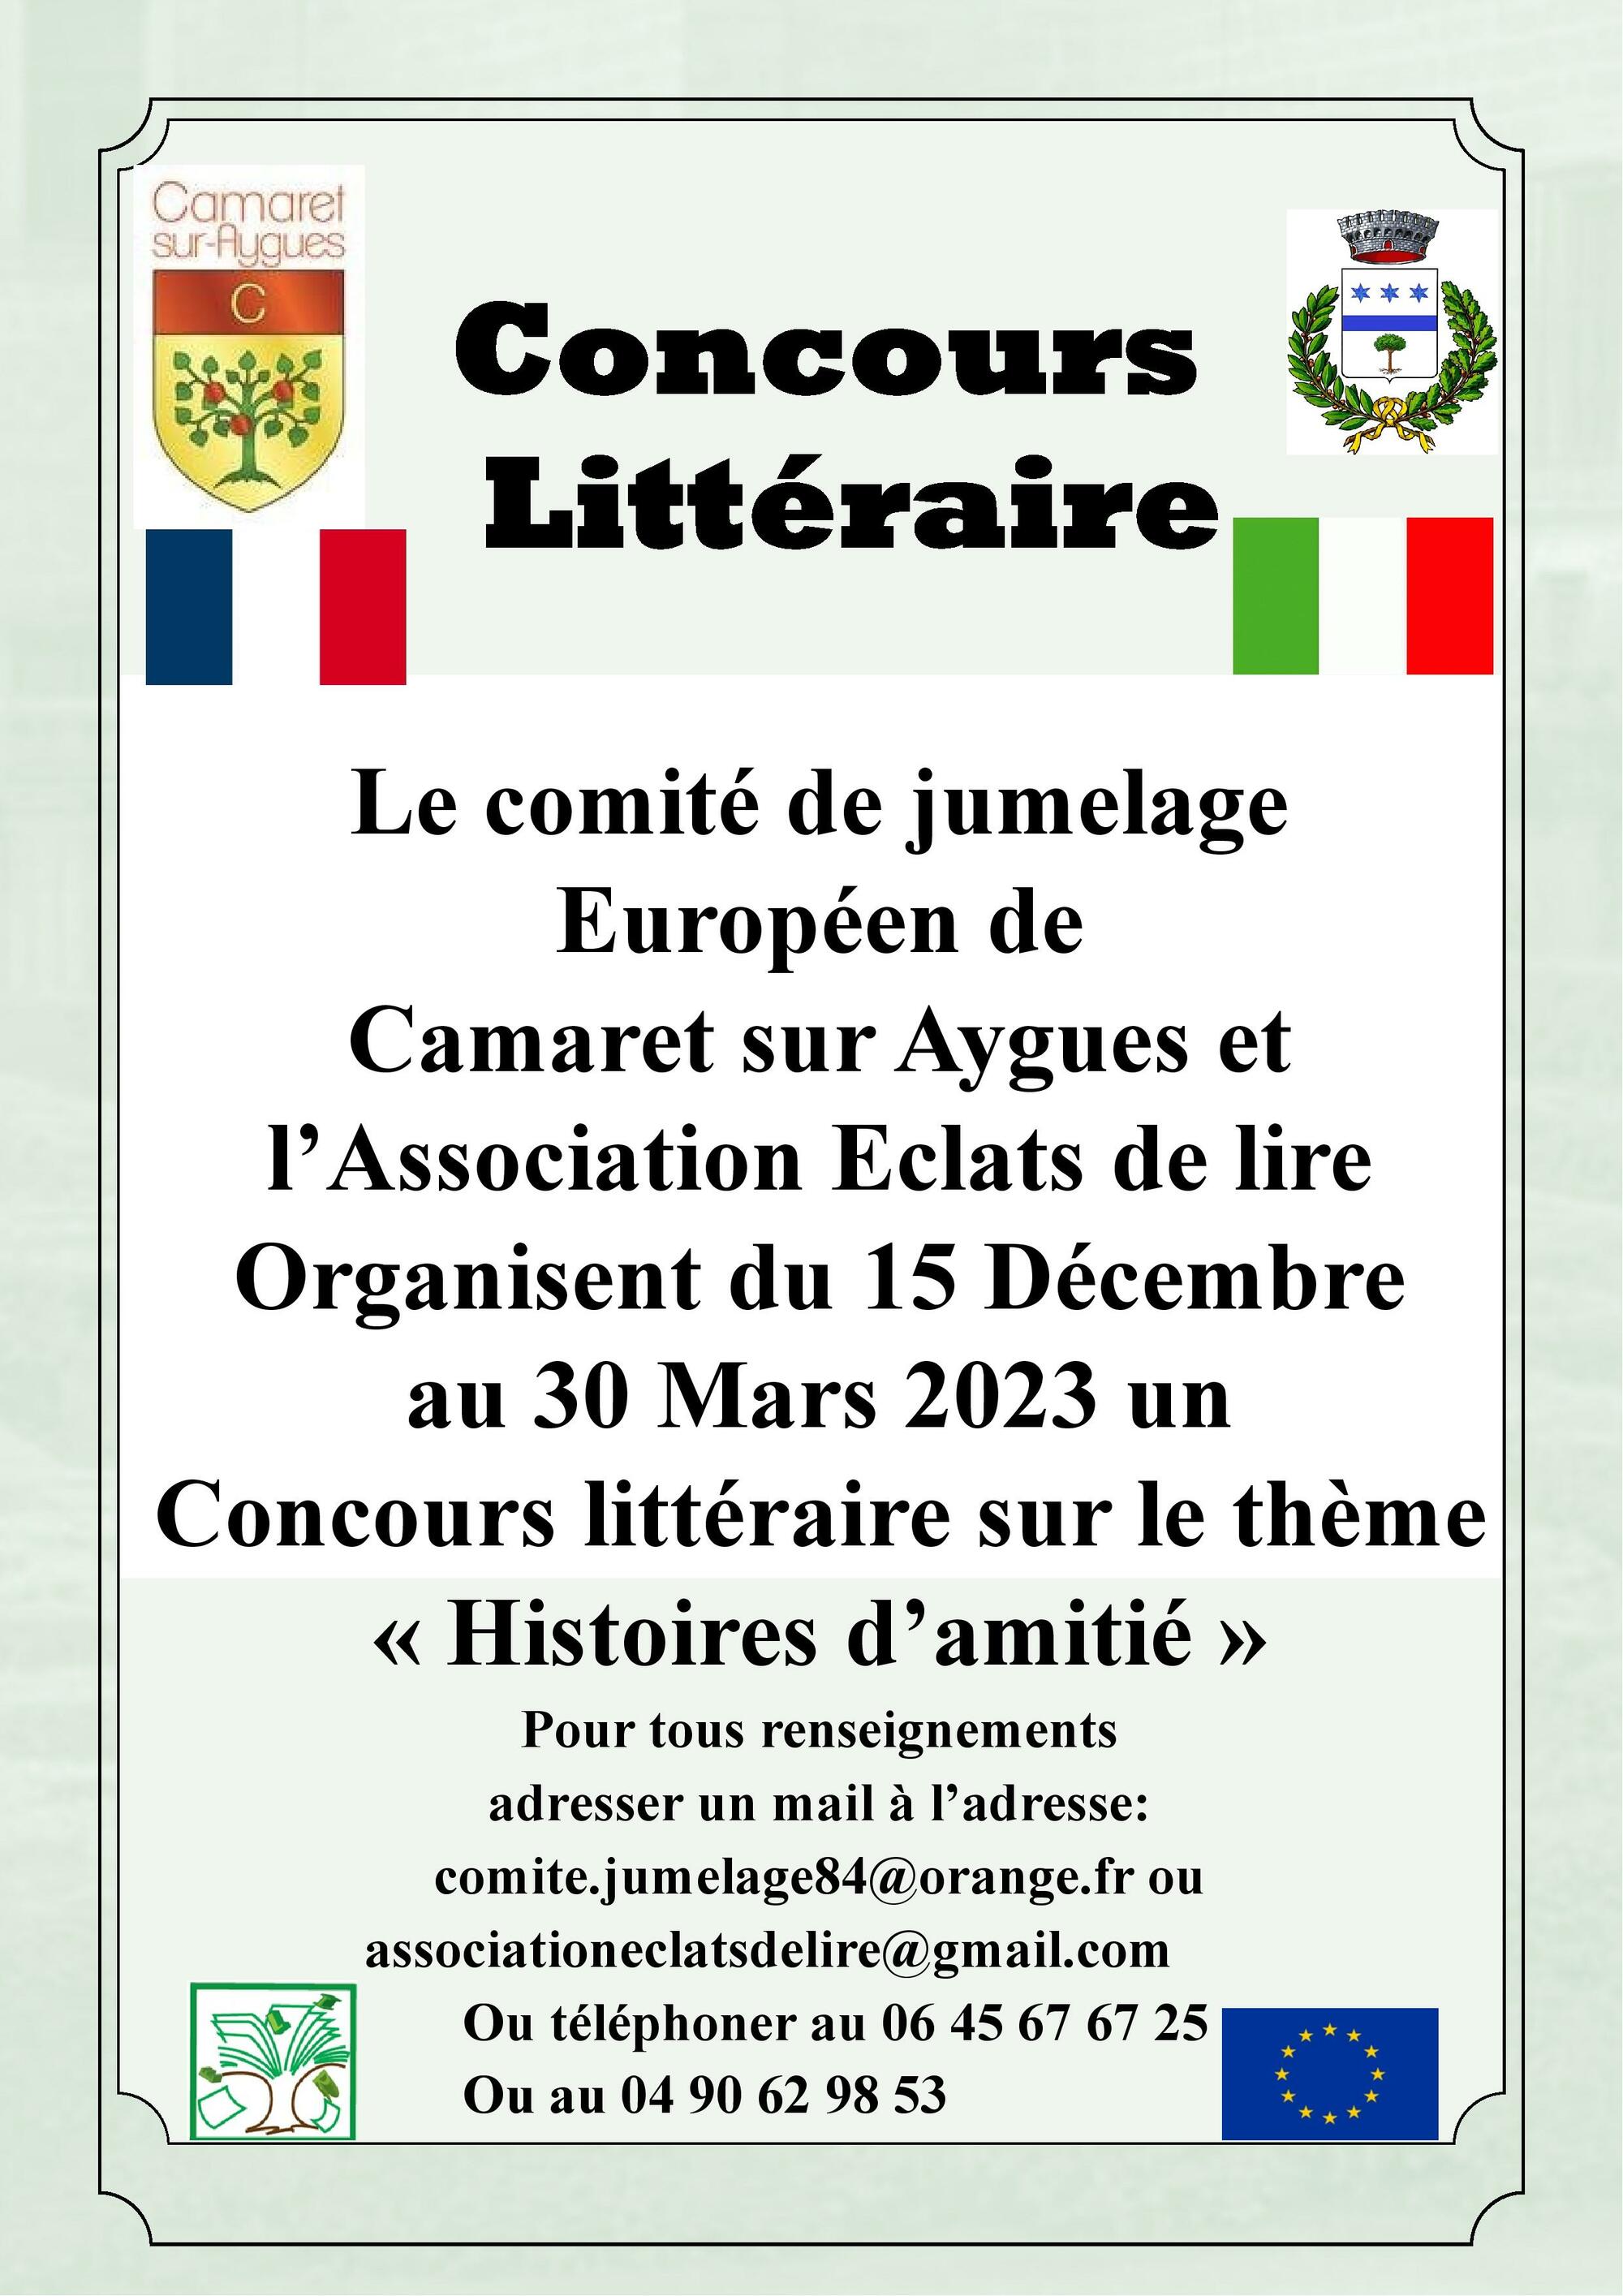 Concours littéraire organisé par le Comité de Jumelage Italien et l'association Éclats de Lire